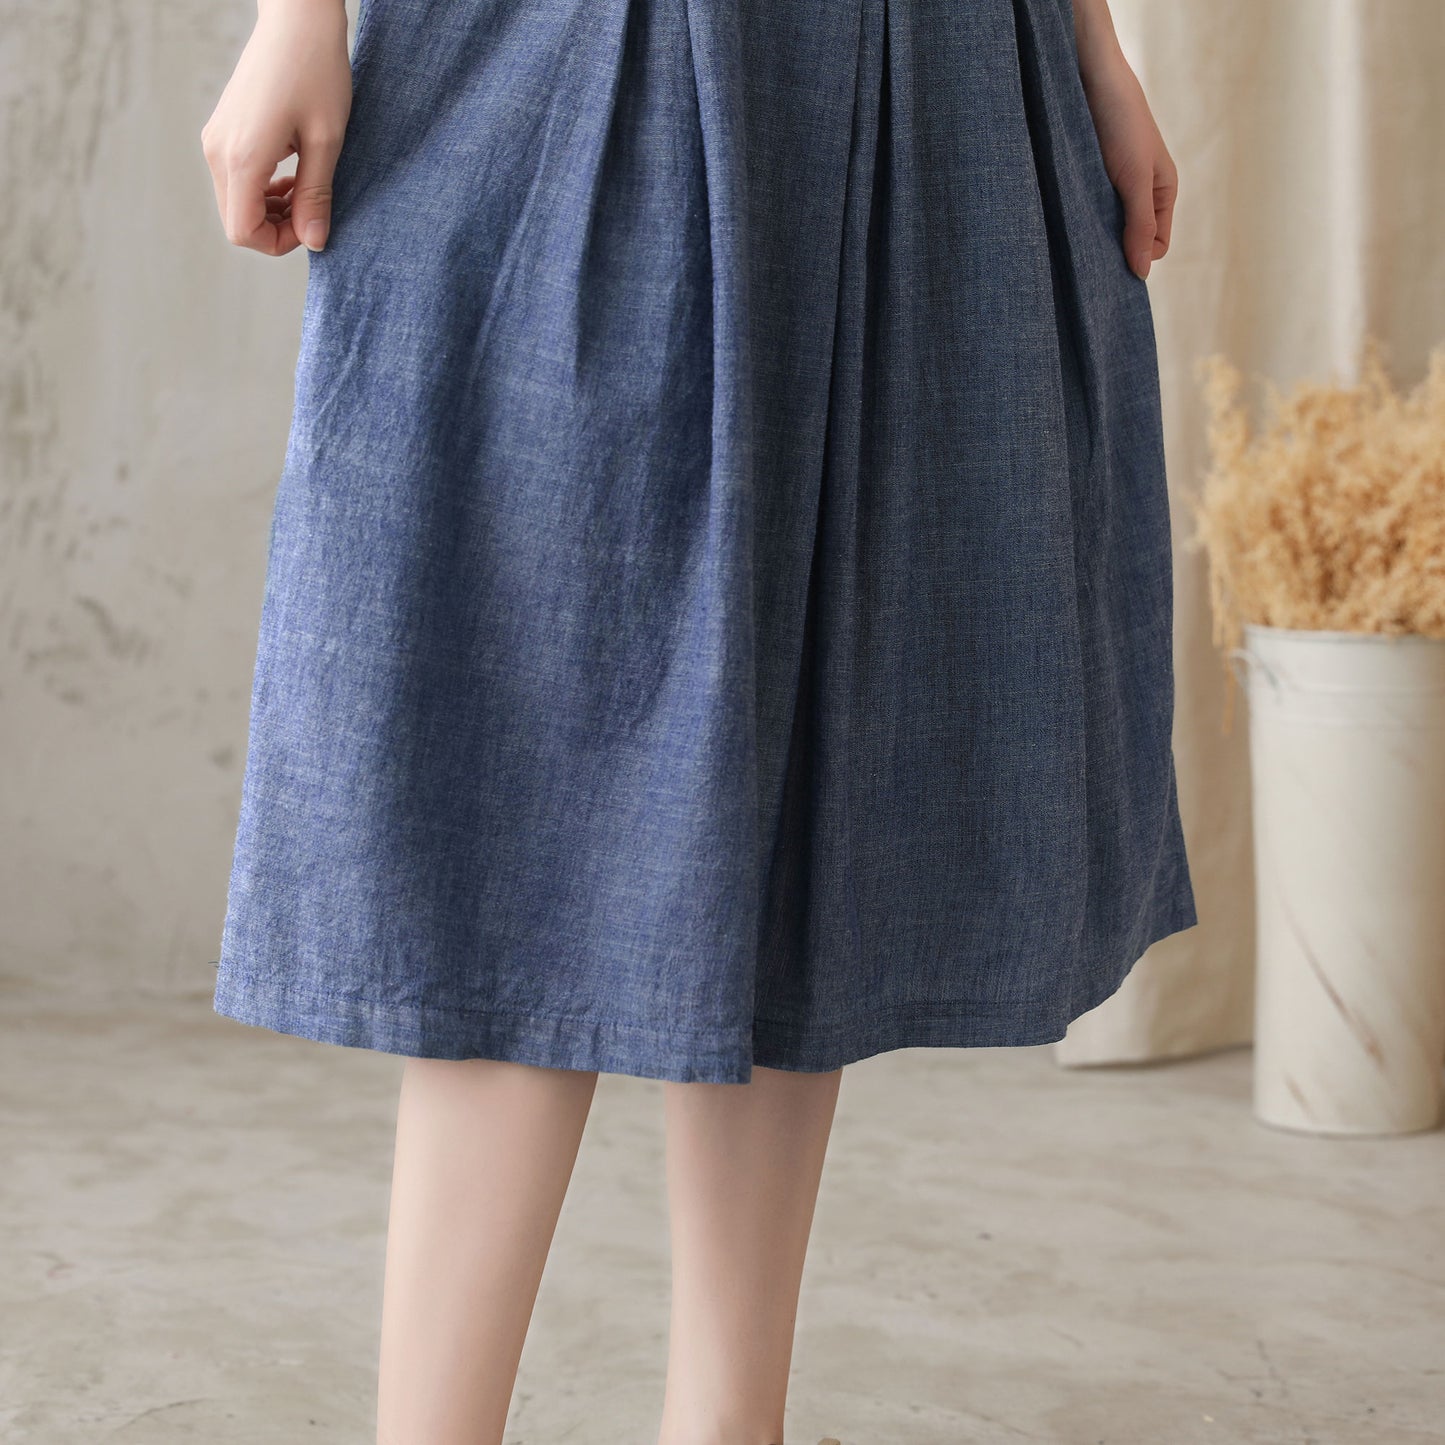 Plus Size Loose Waist Cotton Linen Dress 272901#